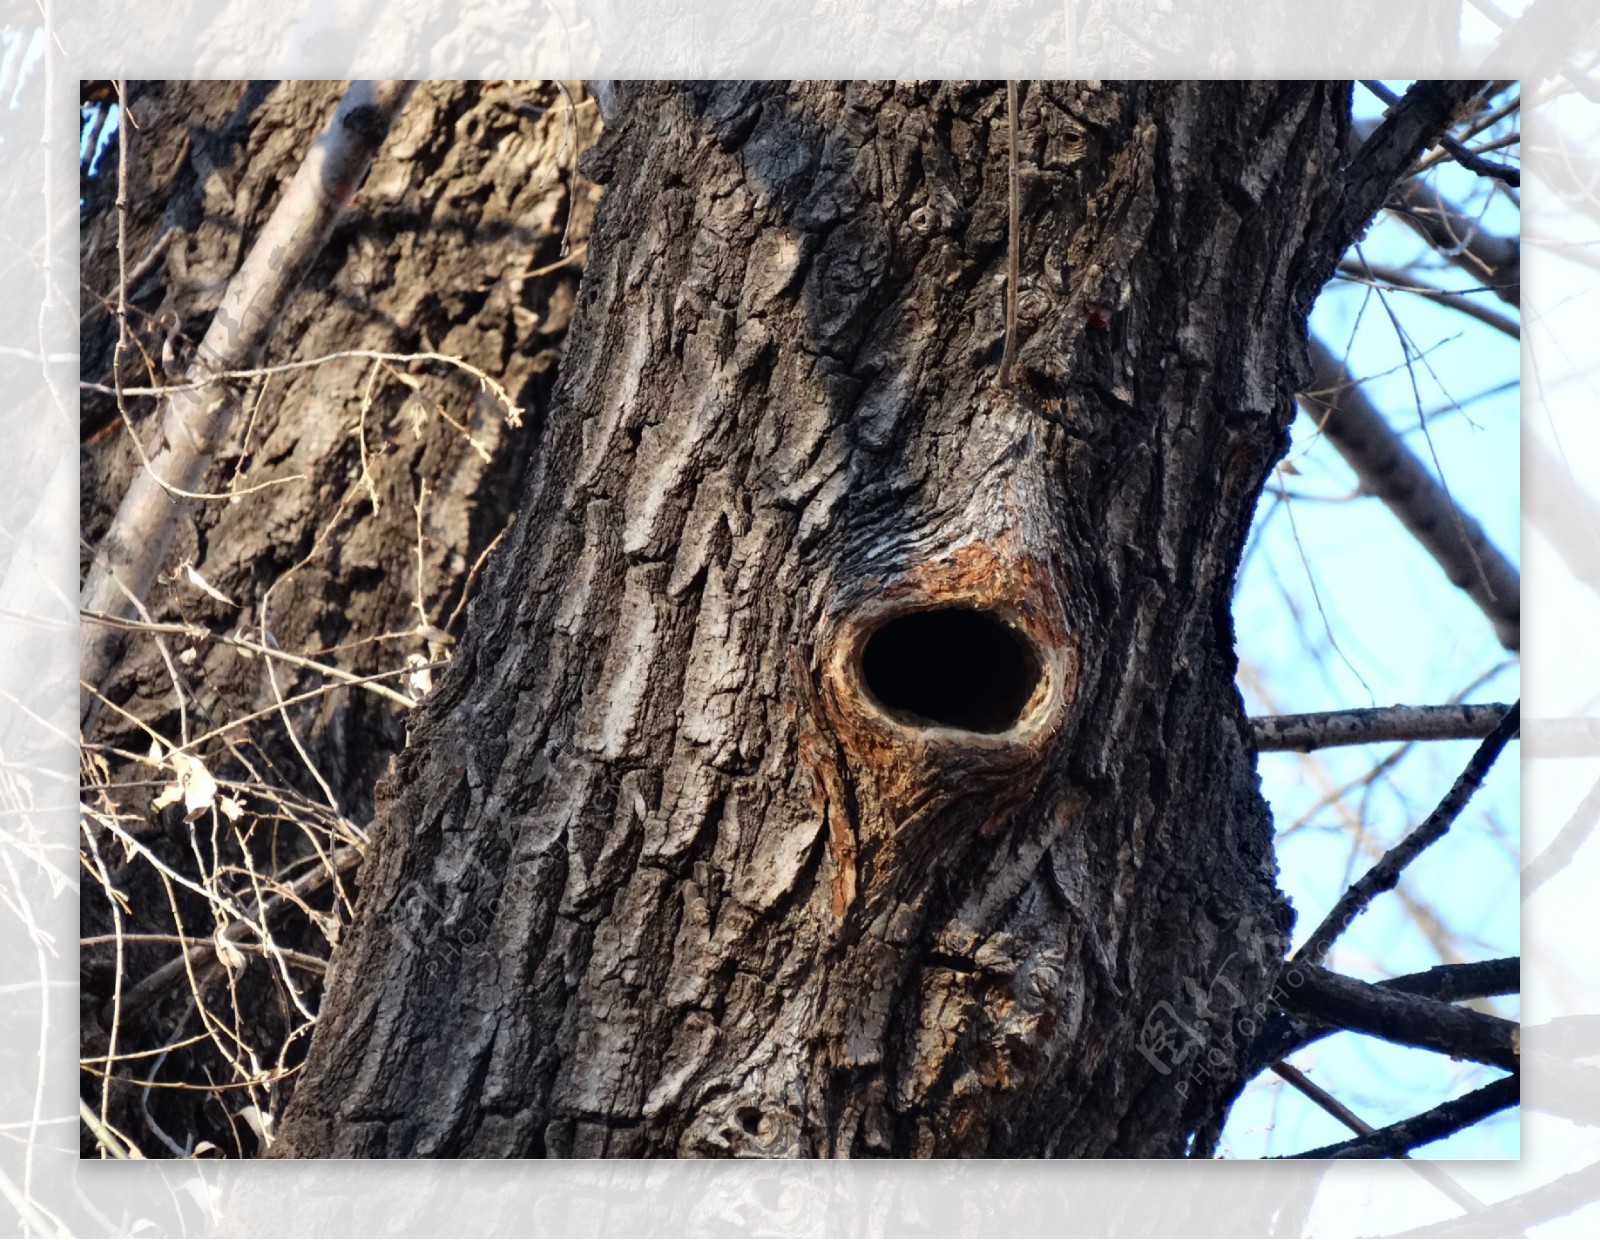 啄木鸟巢穴图片